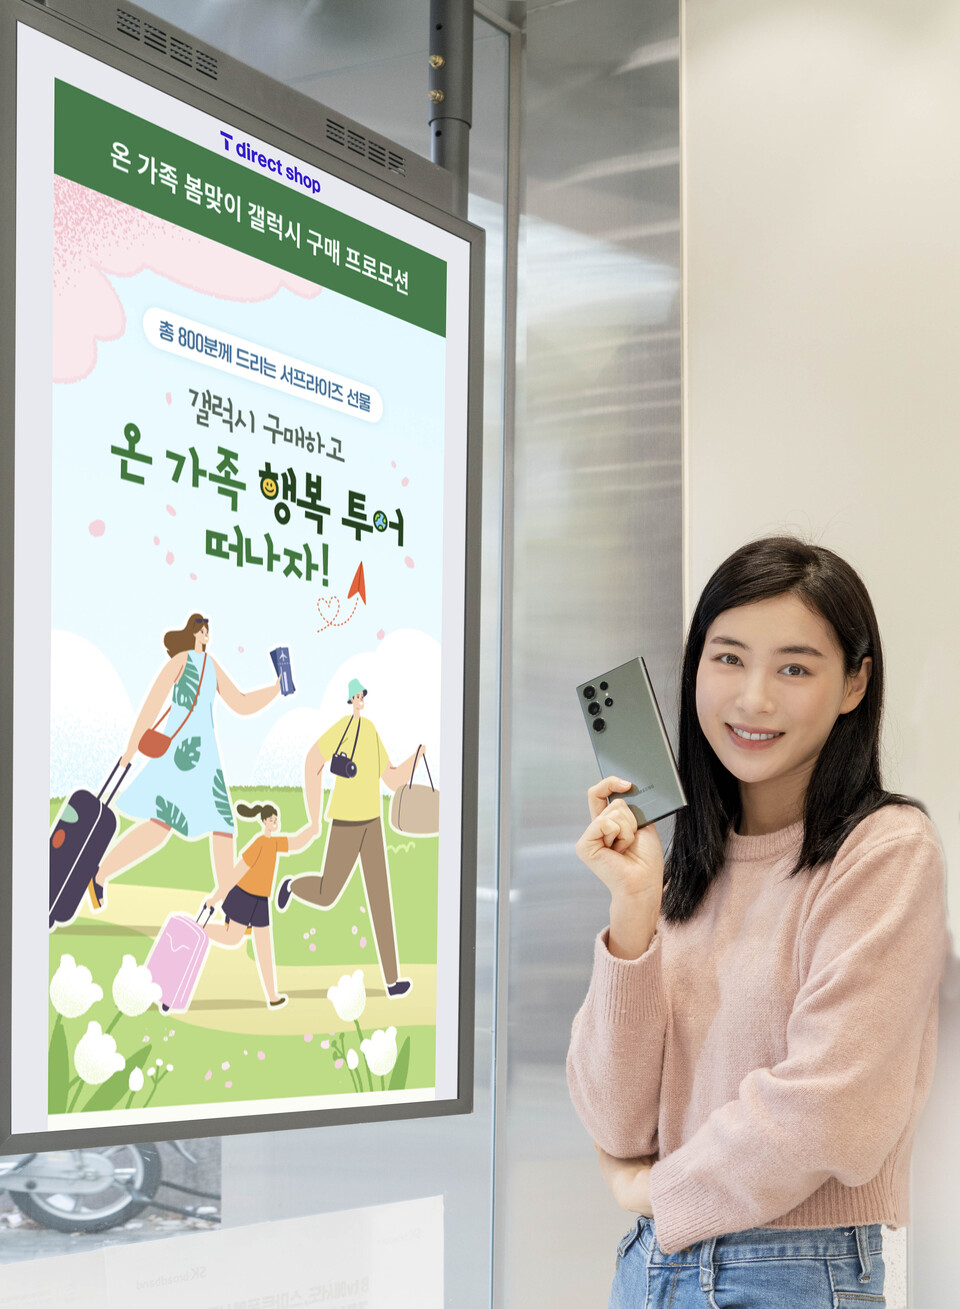 SK텔레콤 홍보모델이 T다이렉트샵에서 진행하는 봄맞이 스마트폰 구매 프로모션을 소개하고 있다. (사진=SK텔레콤 제공)